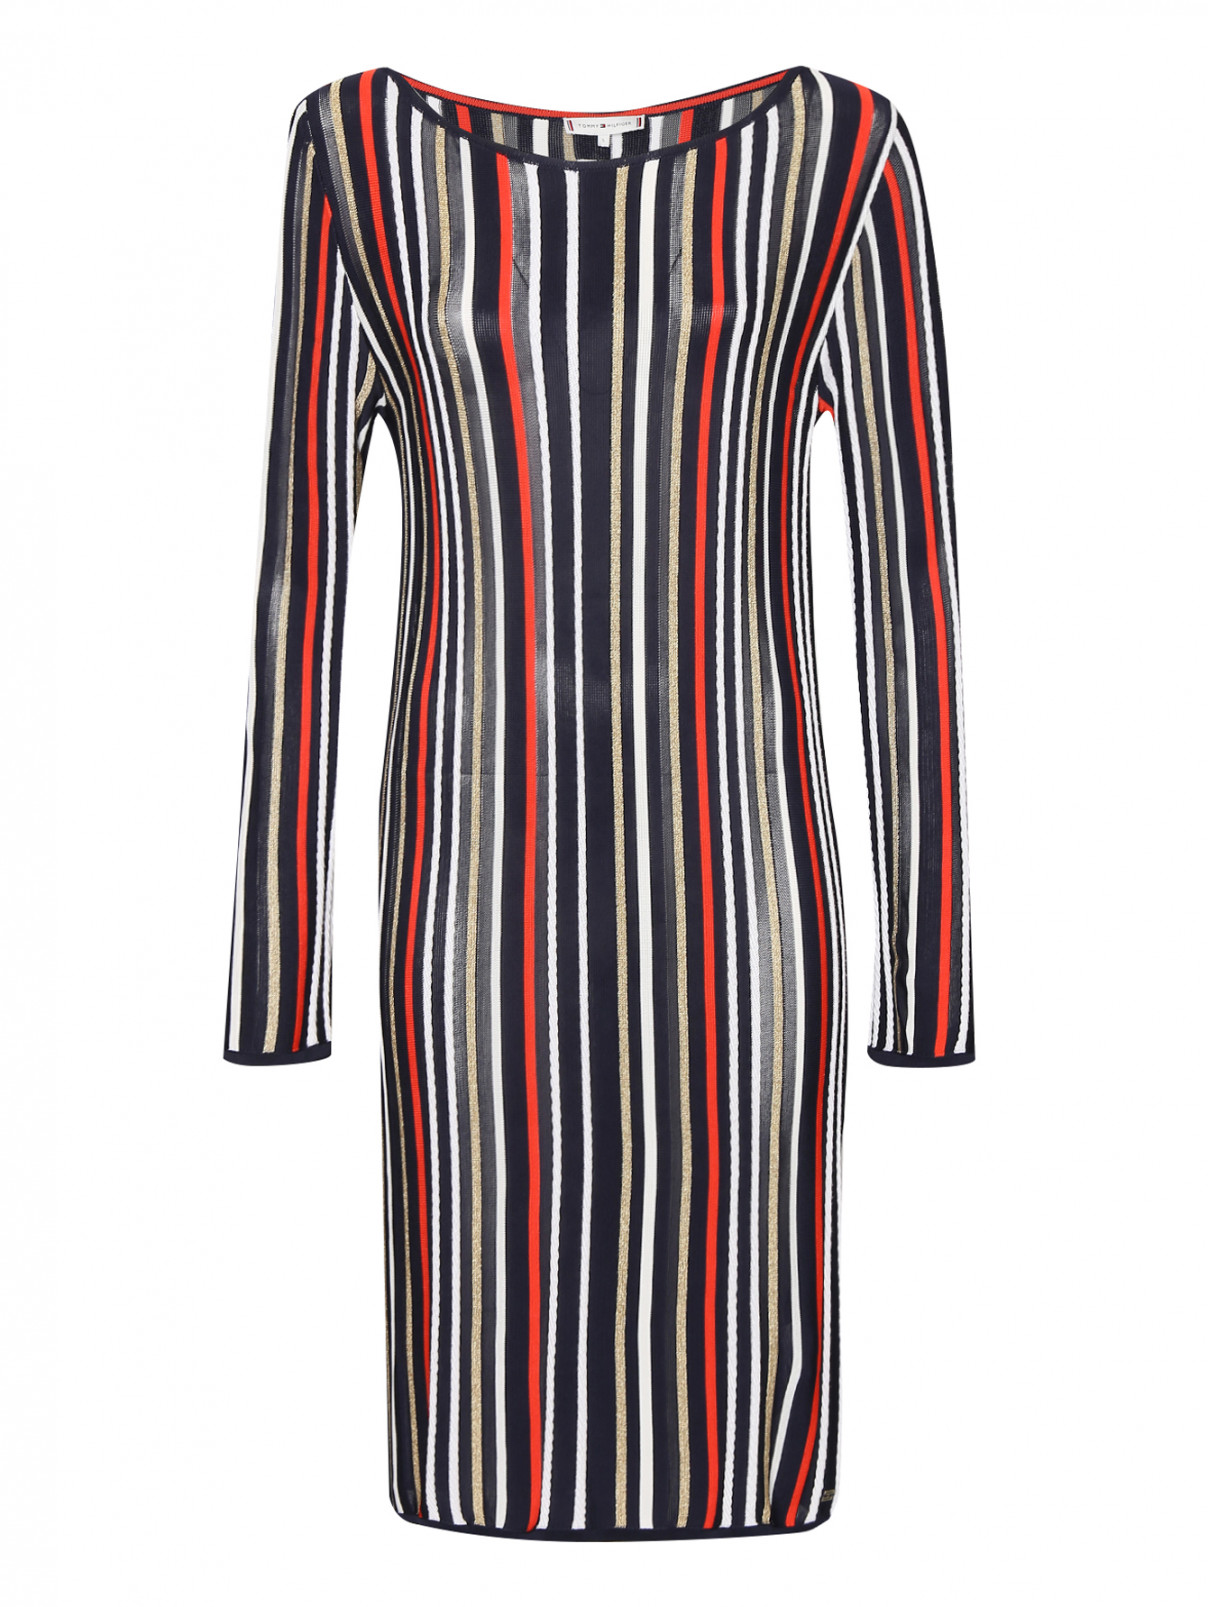 Трикотажное платье с узором полоска Tommy Hilfiger  –  Общий вид  – Цвет:  Мультиколор